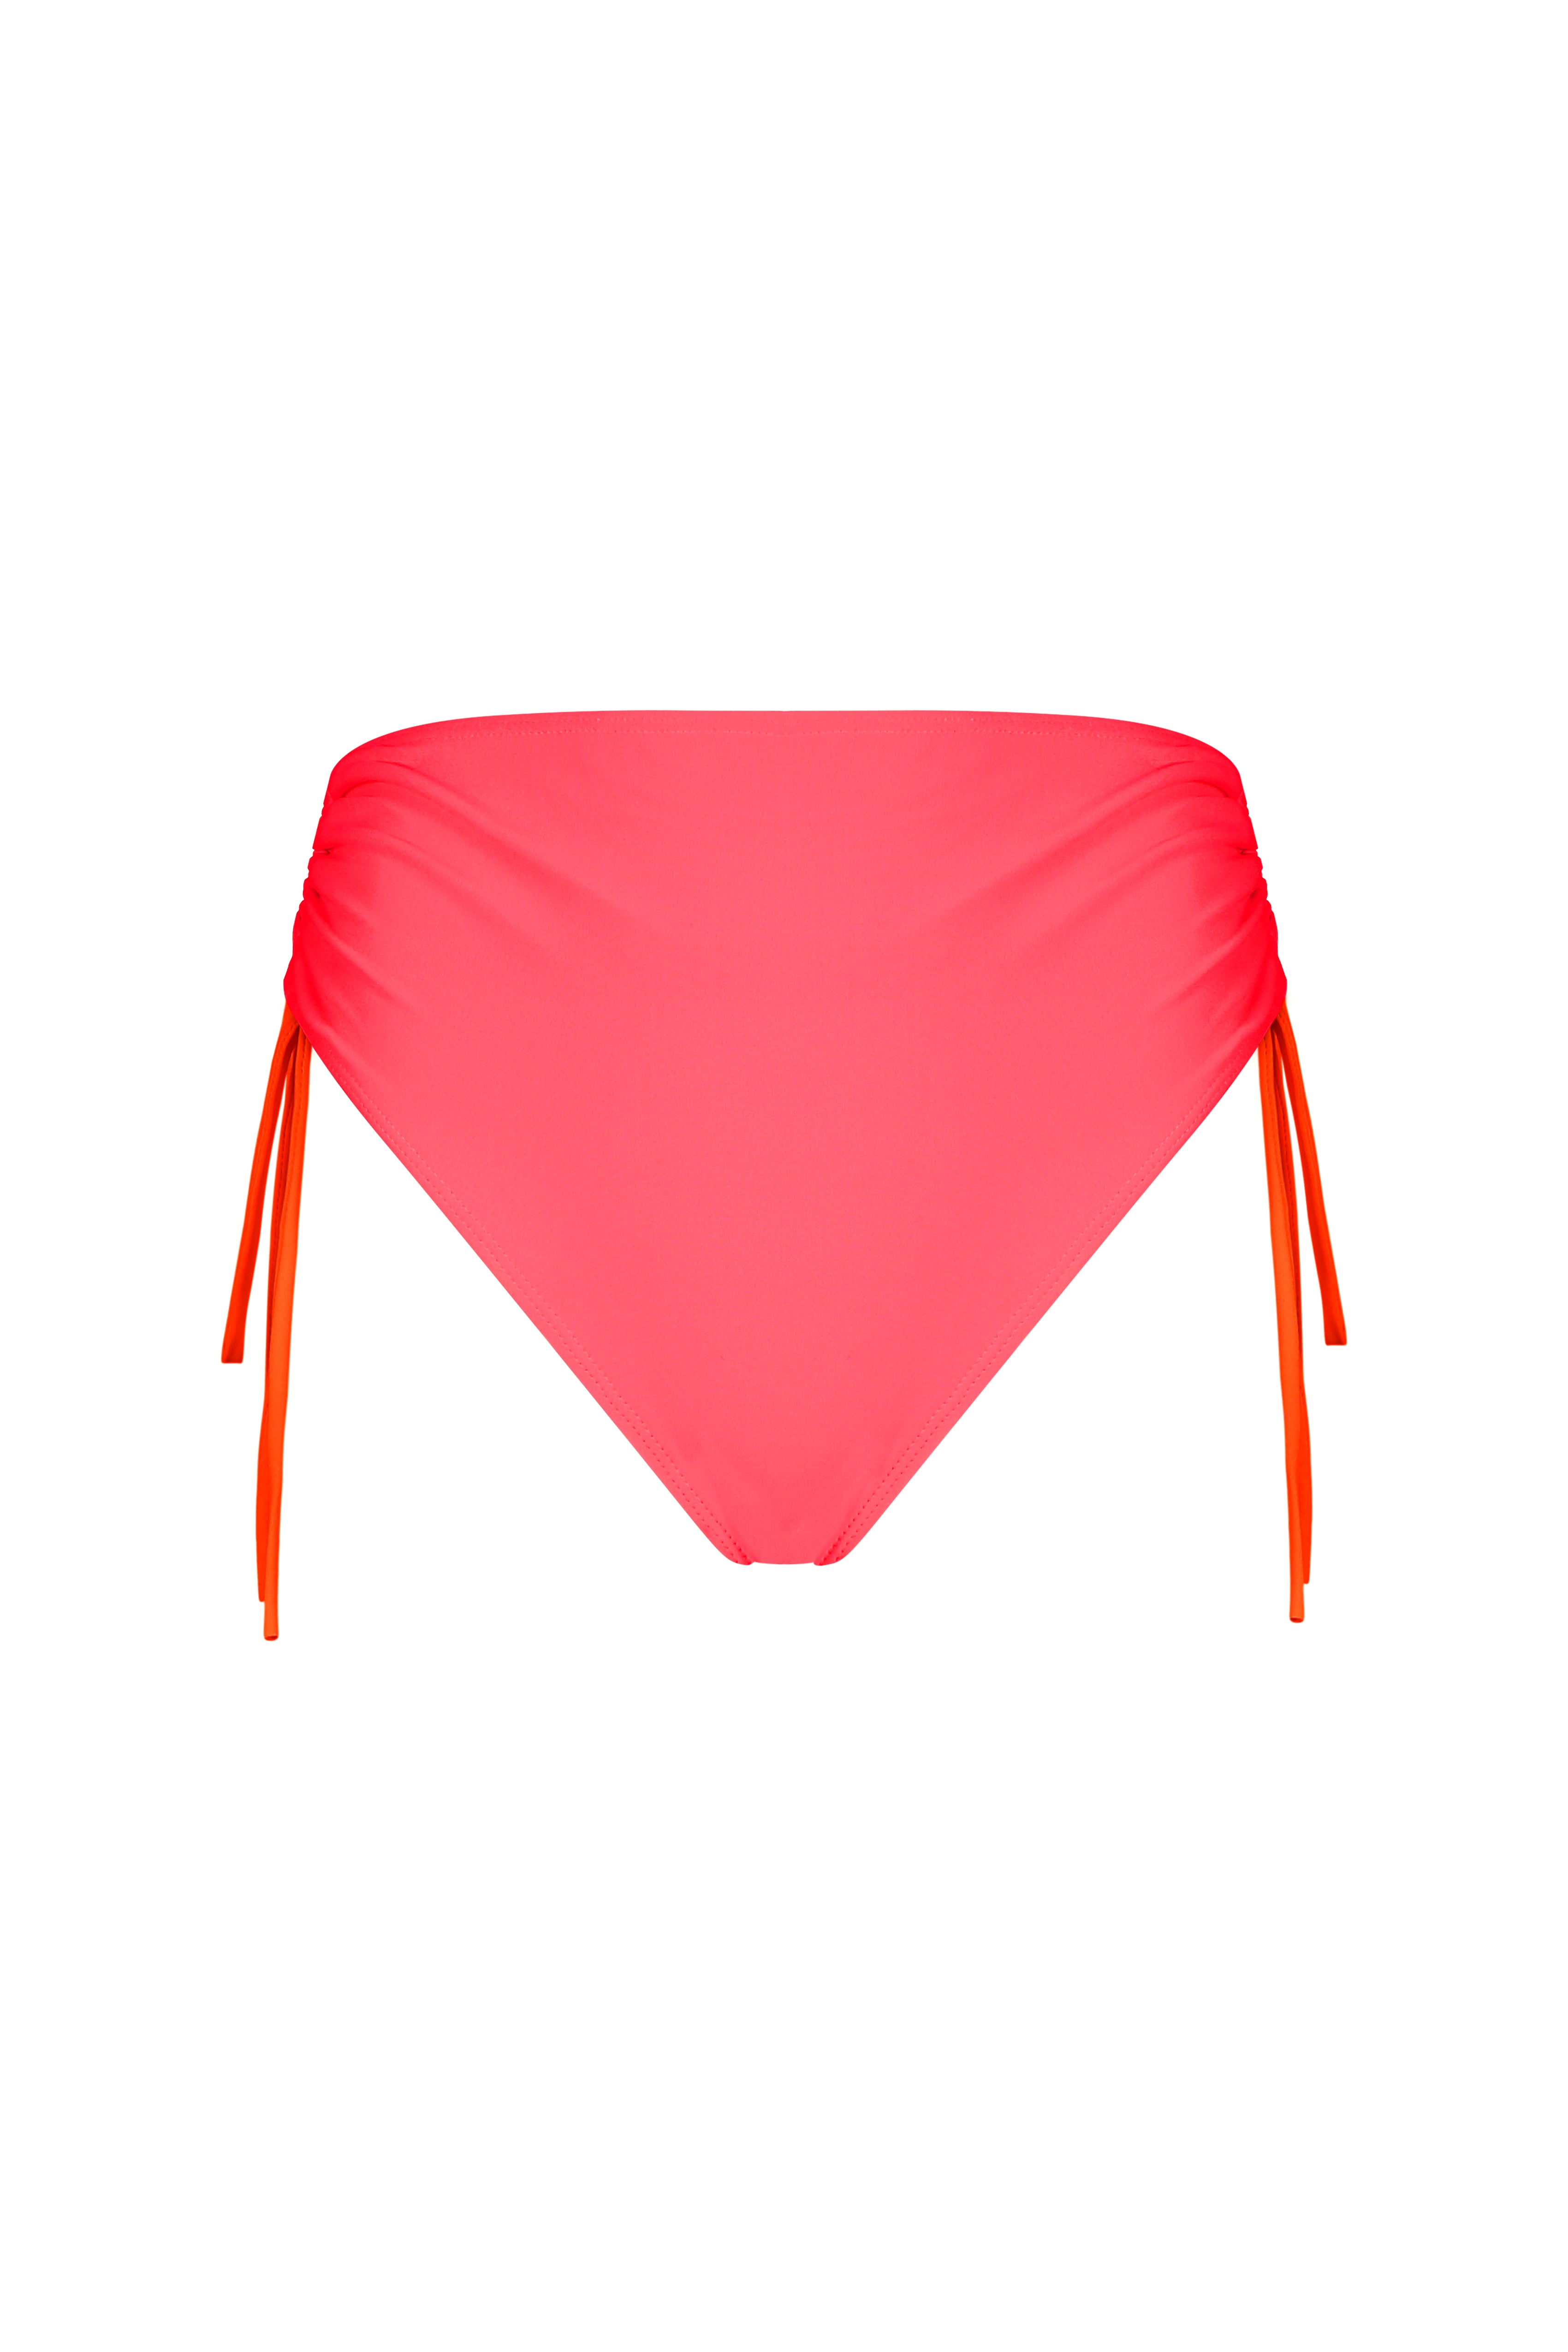 Neon Hot Pink High Waist Thong Bikini Bottoms - Sunnyside Swimwear